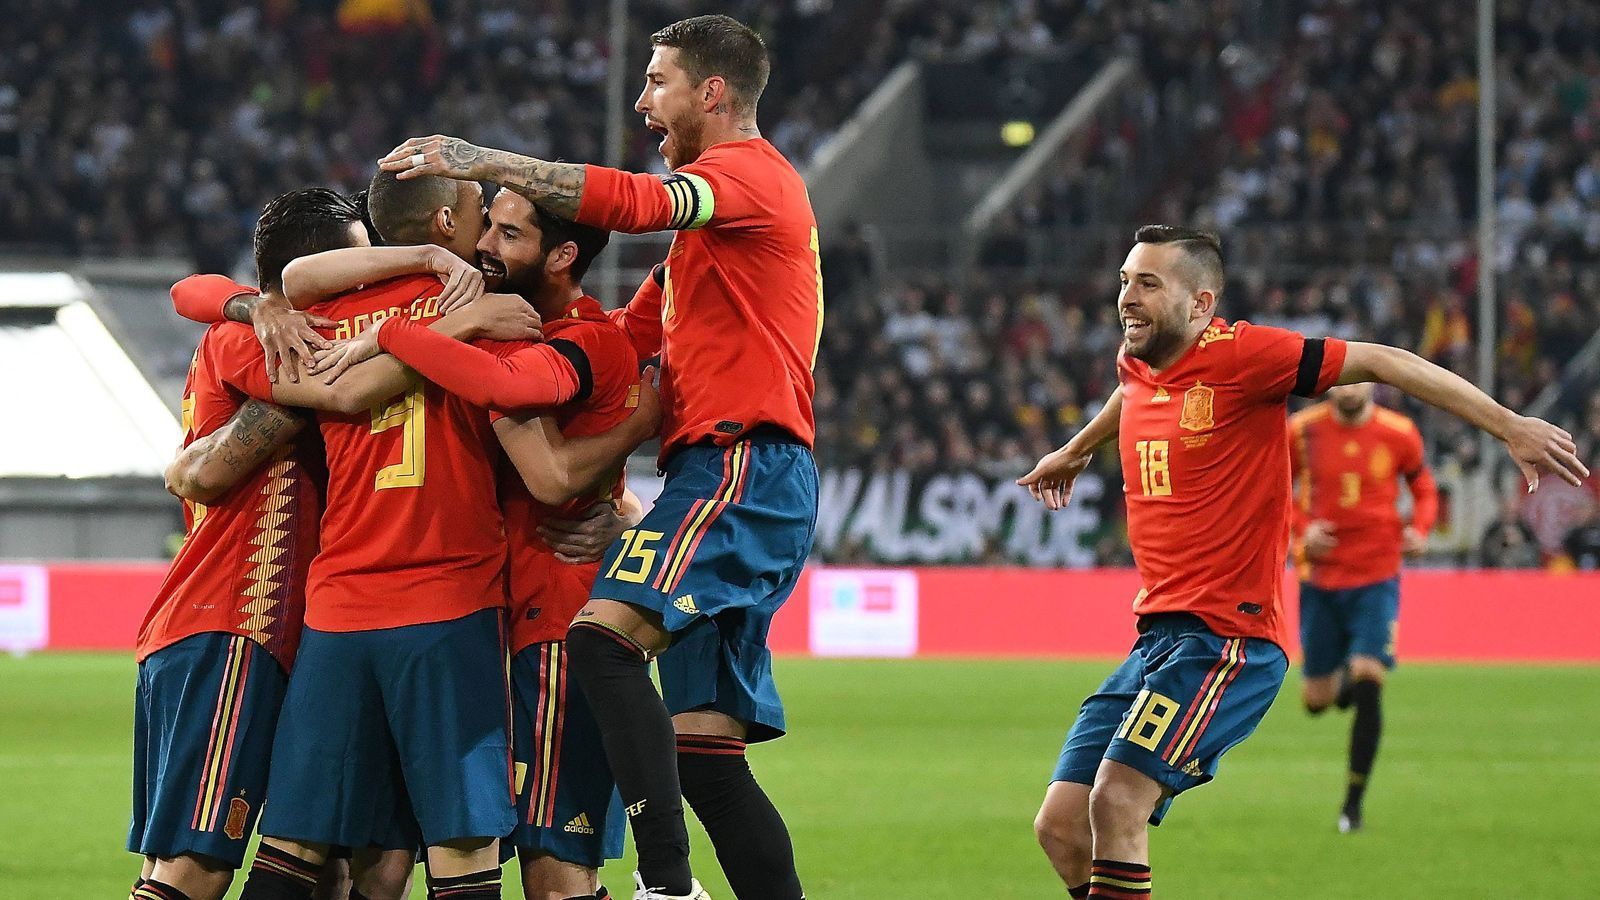 
                <strong>ran Production Manager Kai Salzmann tippt</strong><br>
                Weltmeister wird: Spanien. Es ist einfach die ausgeglichenste Mannschaft. Zudem besitzt Spanien viel Turniererfahrung, auch dank der Champions League. Und die Hauptpositionen sind einfach stark besetzt.
              